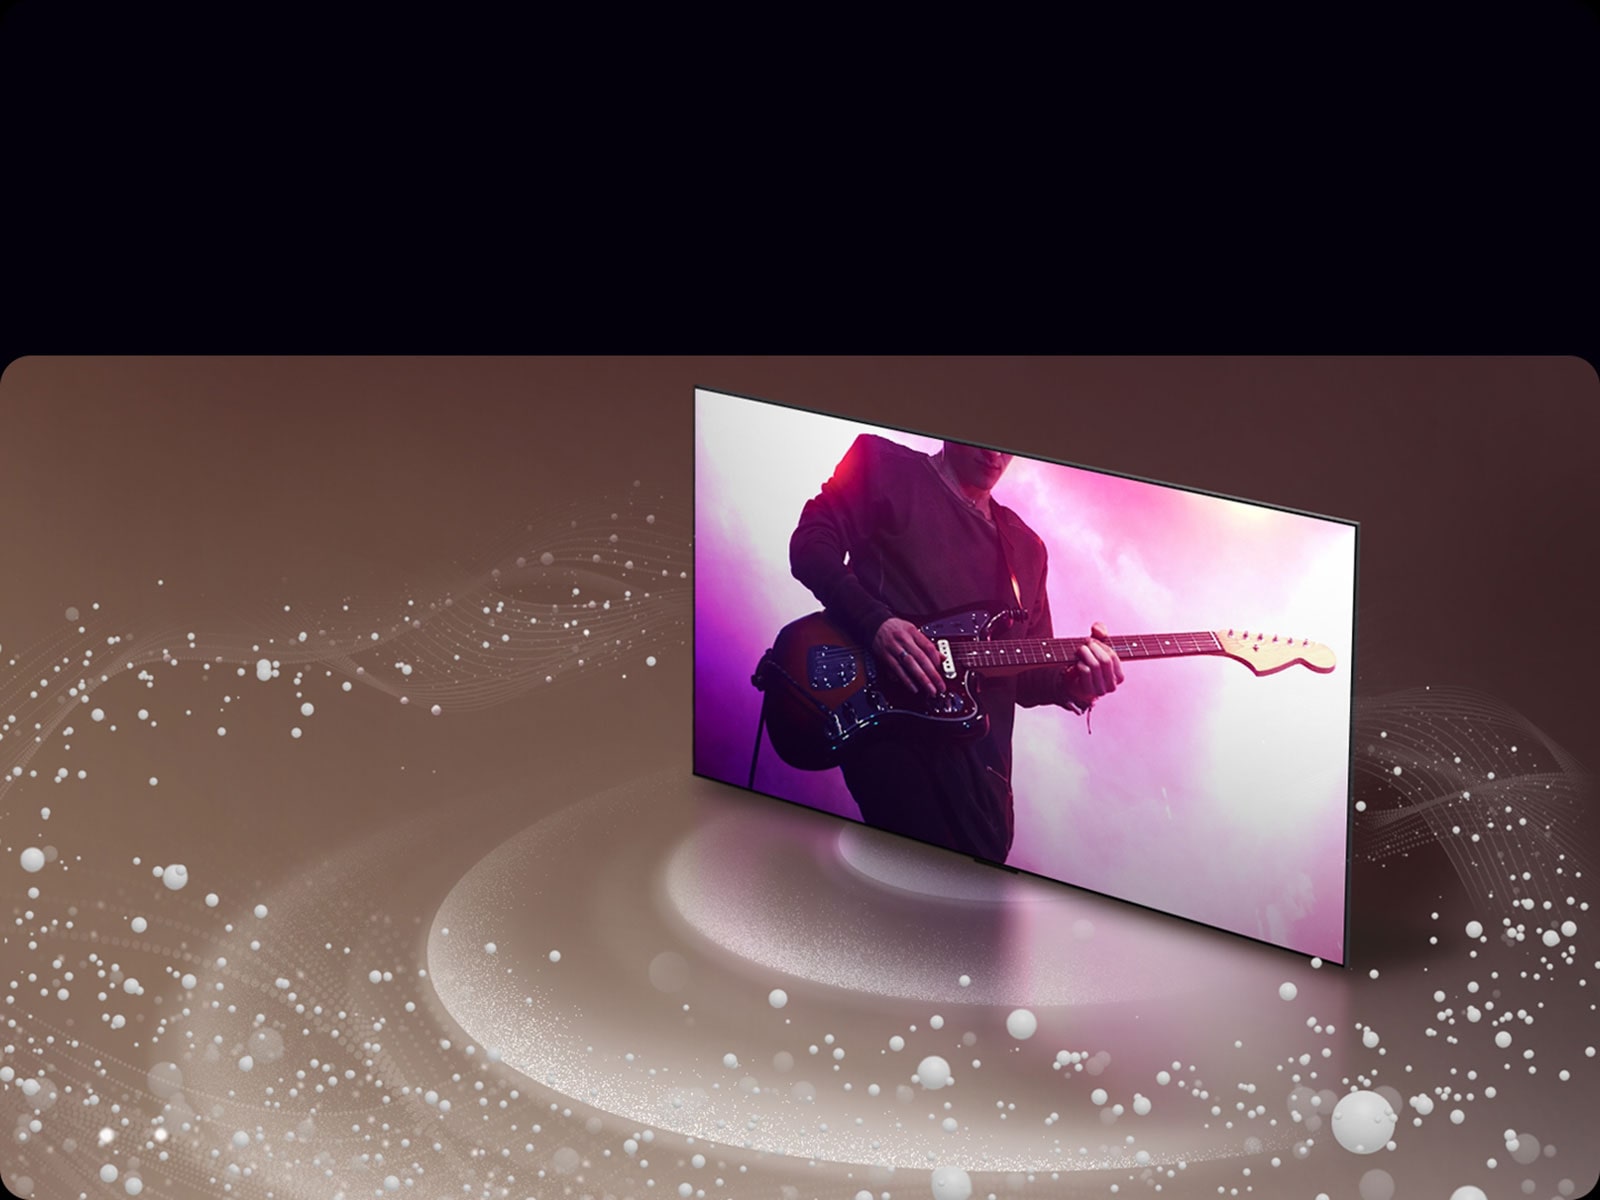 Un LG OLED evo M4 muestra músicos en la pantalla con burbujas y ondas de sonido que se emite de la pantalla y rellenan el espacio.